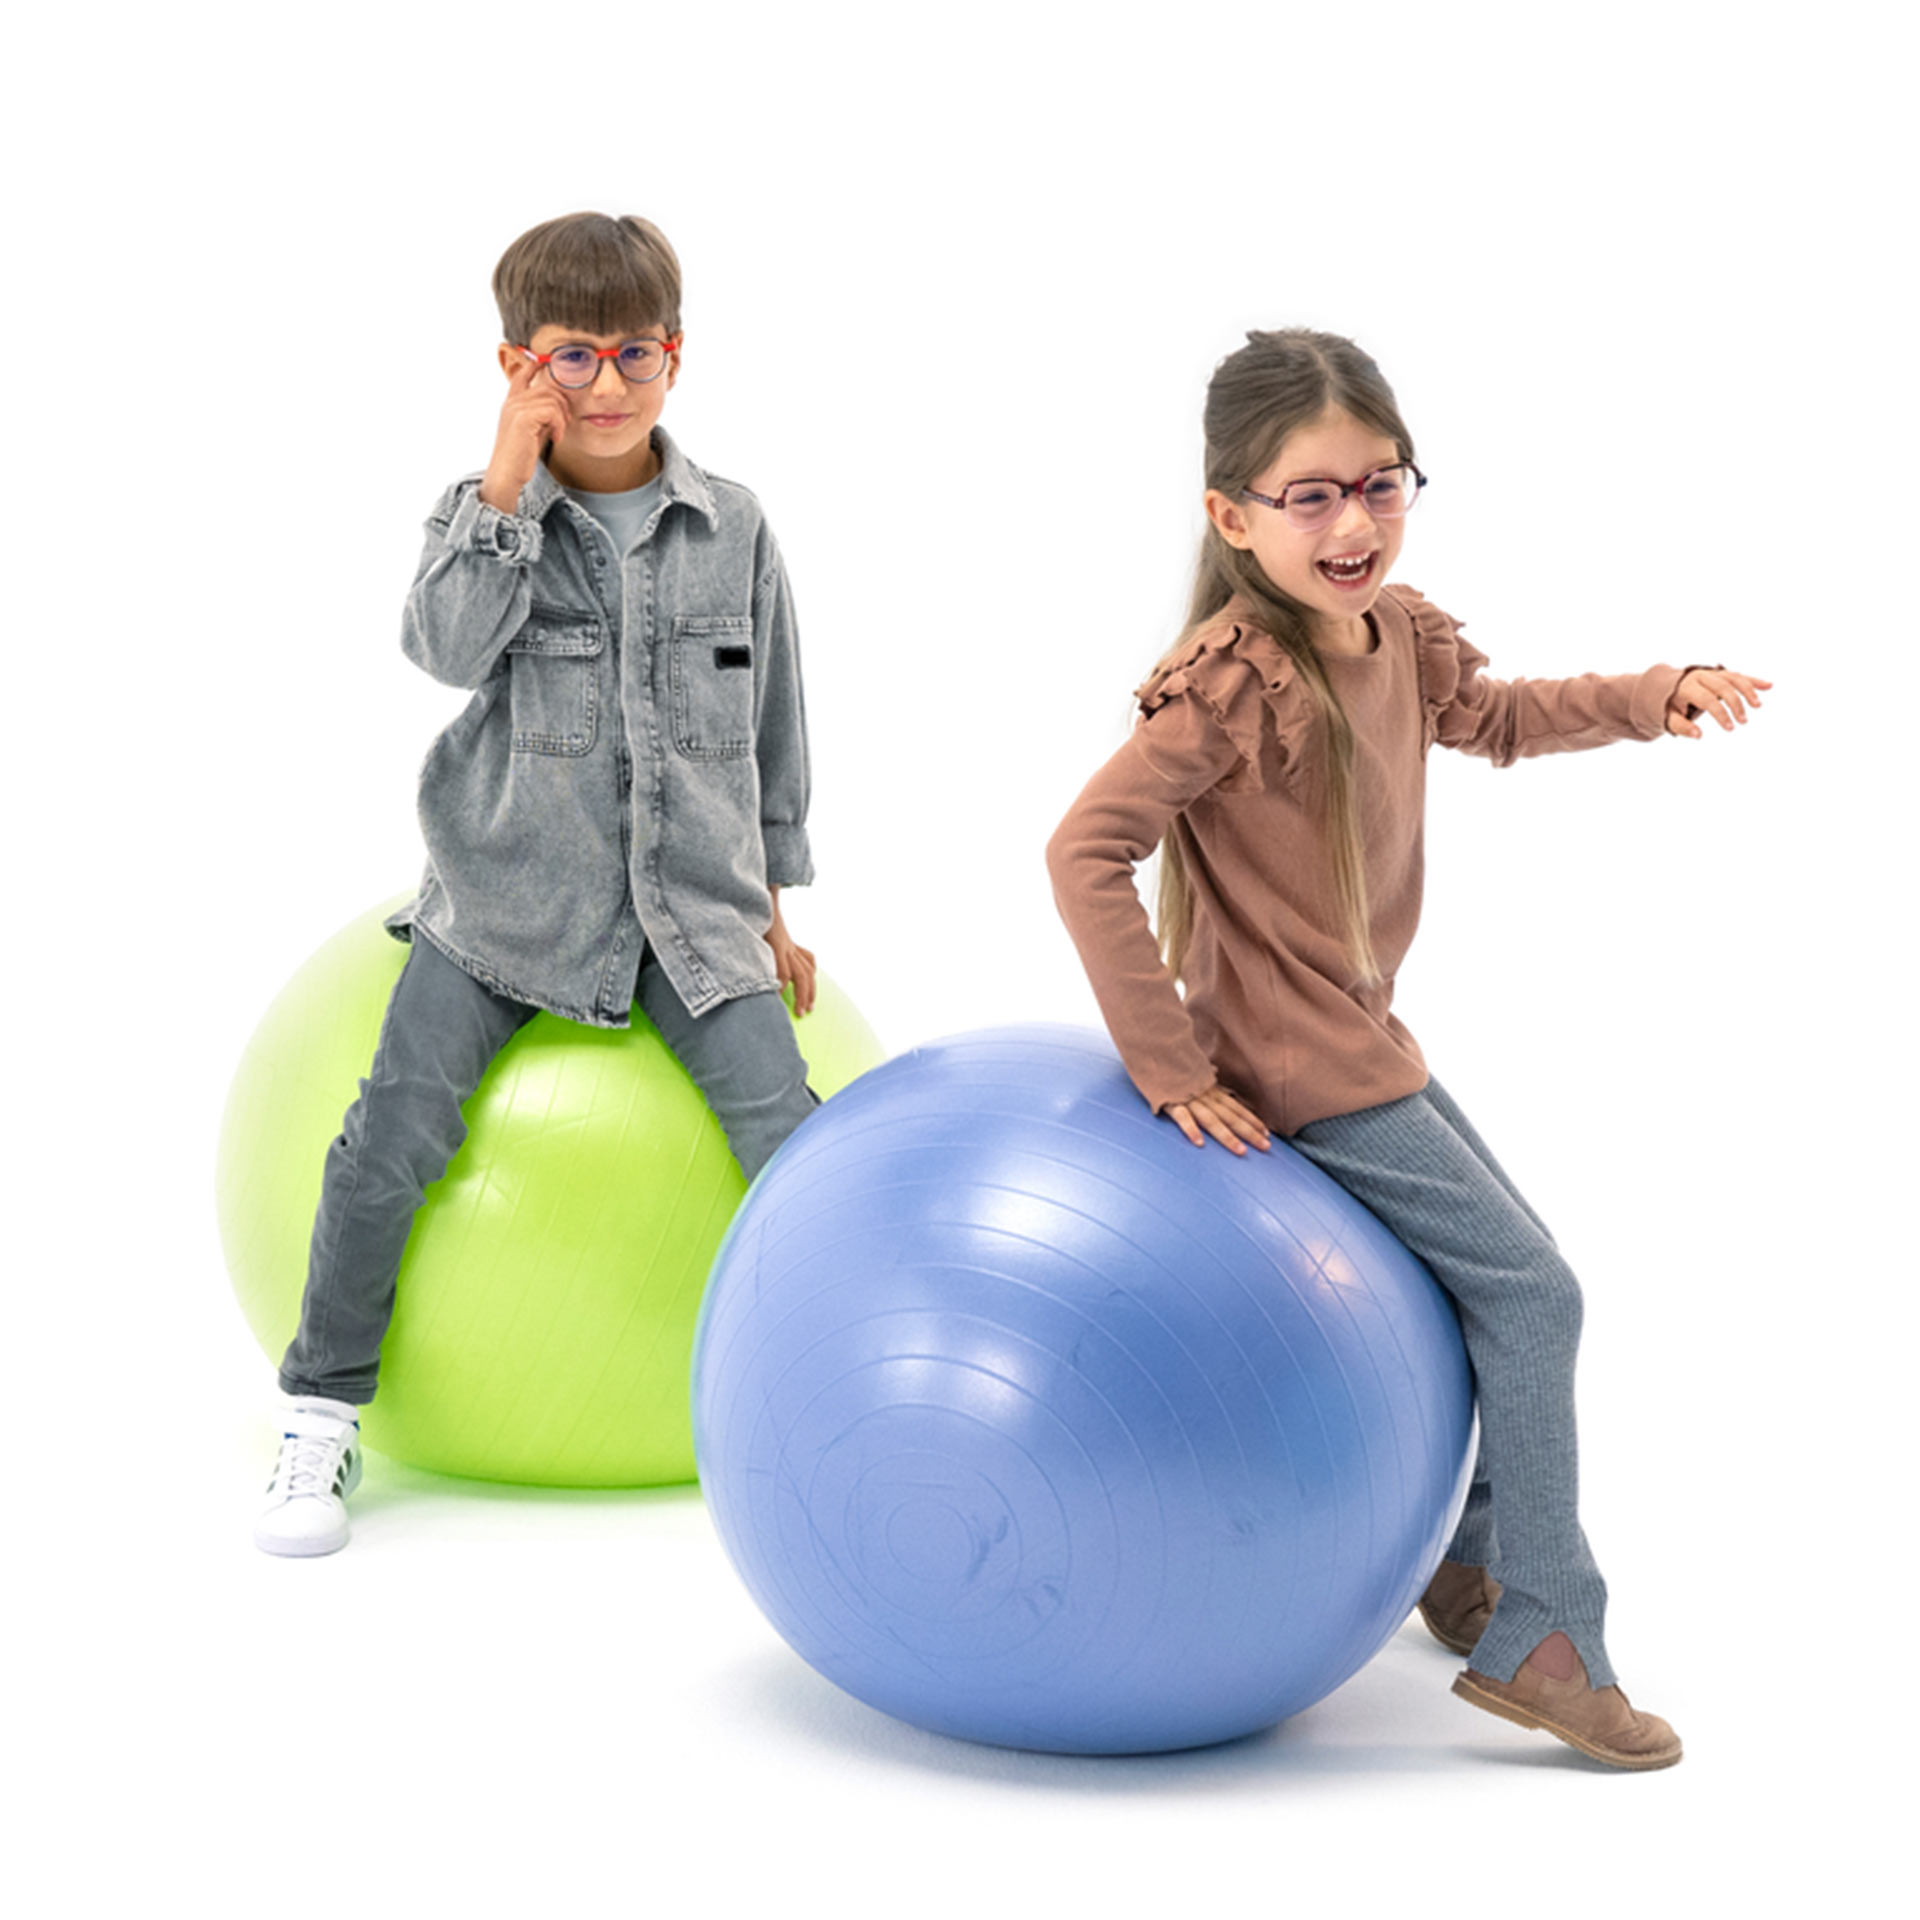 Ein Junge und ein Mädchen, beide mit Brille, hüpfen spielerisch mit Gymnastikbällen herum.